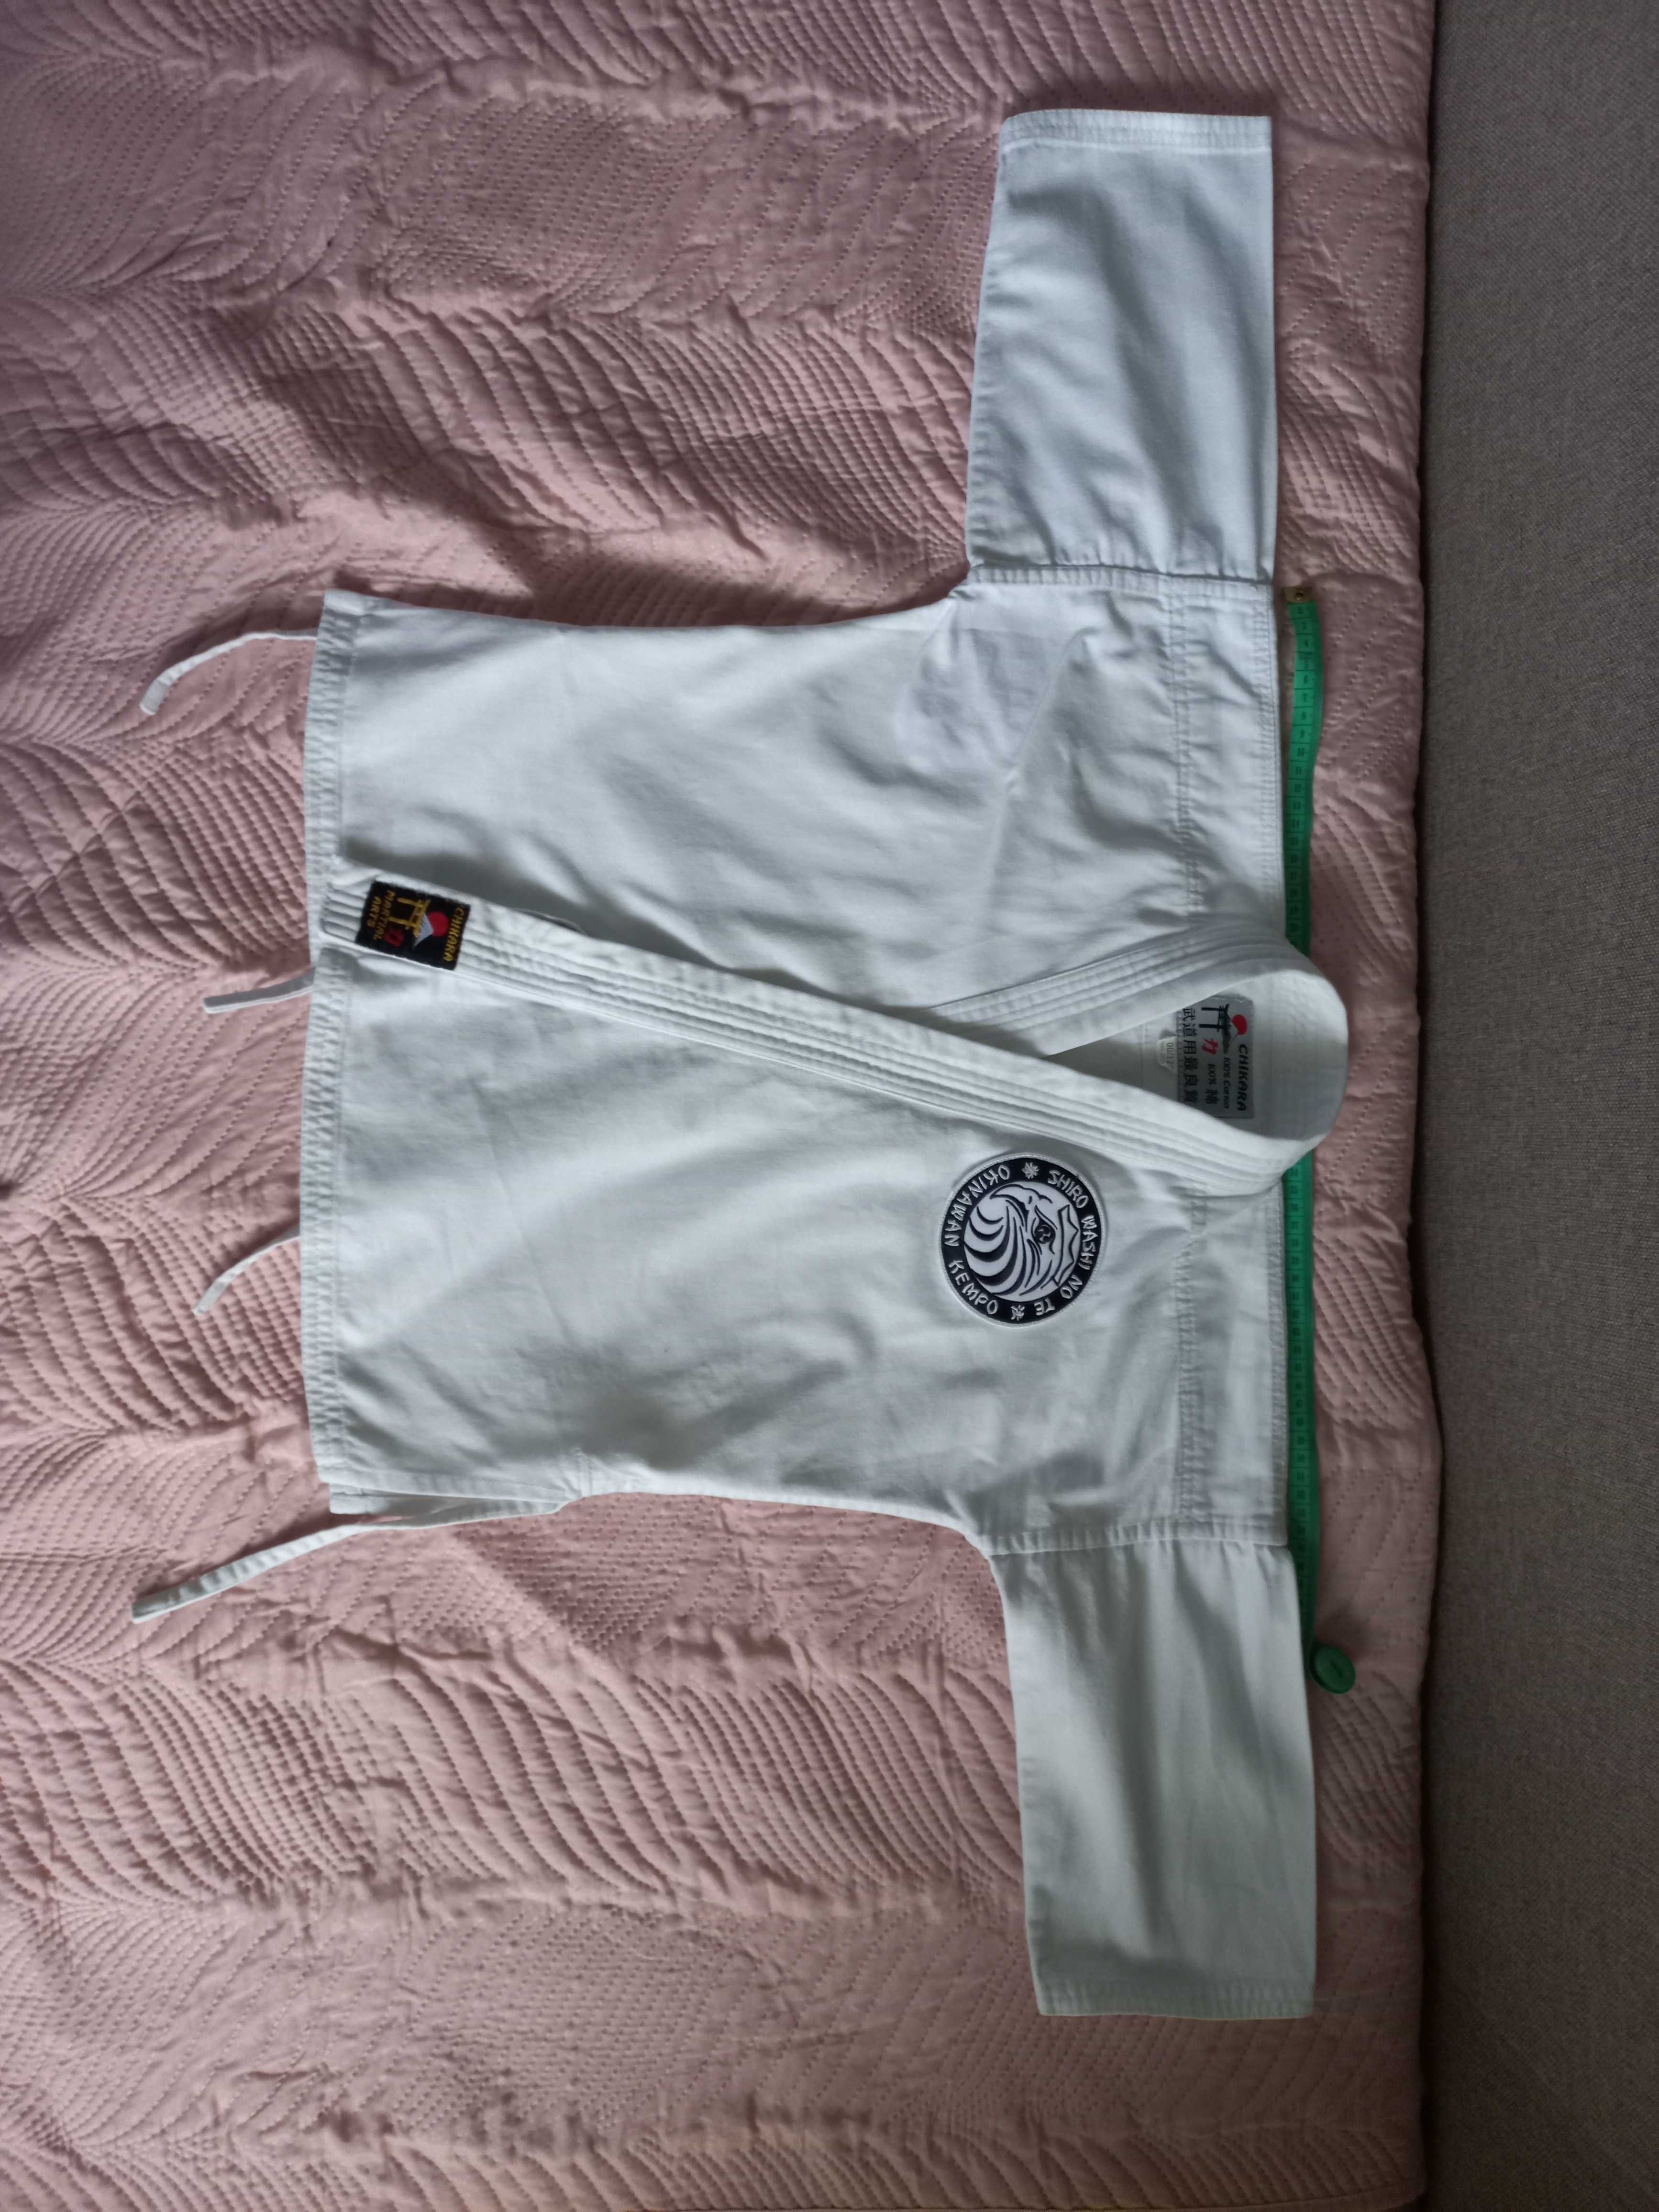 Kimono judoga 120 cm